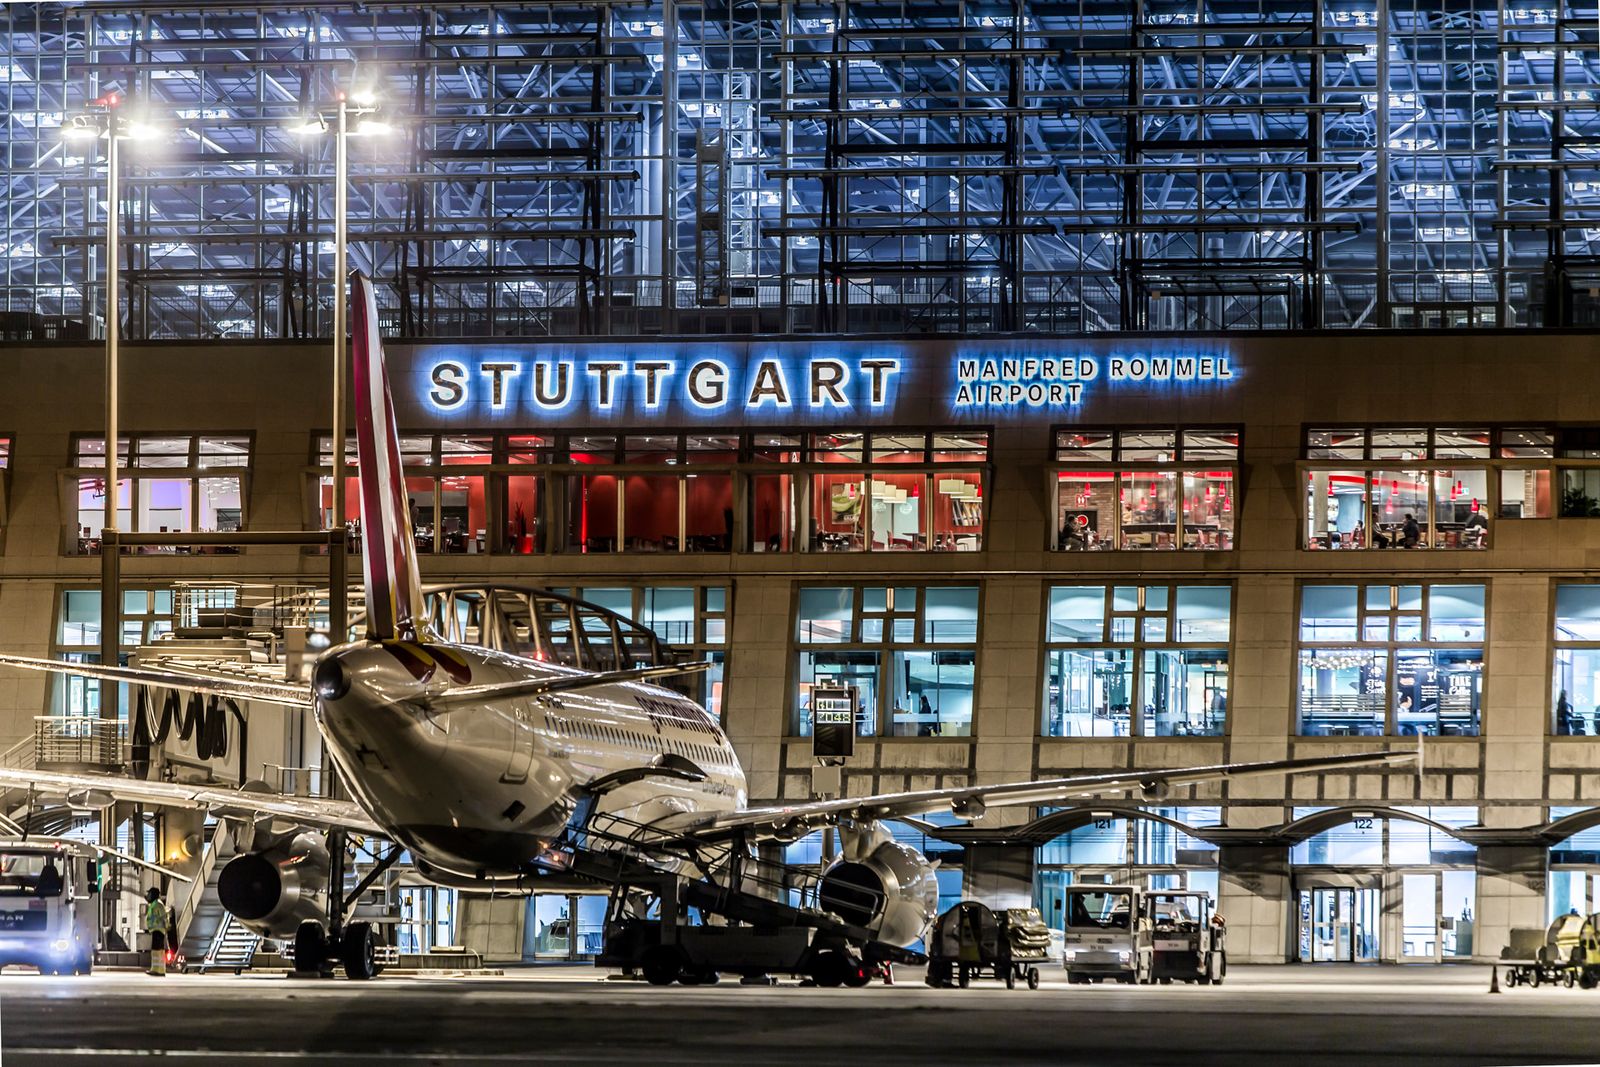 Nachtflugverbot am Flughafen Stuttgart gelockert